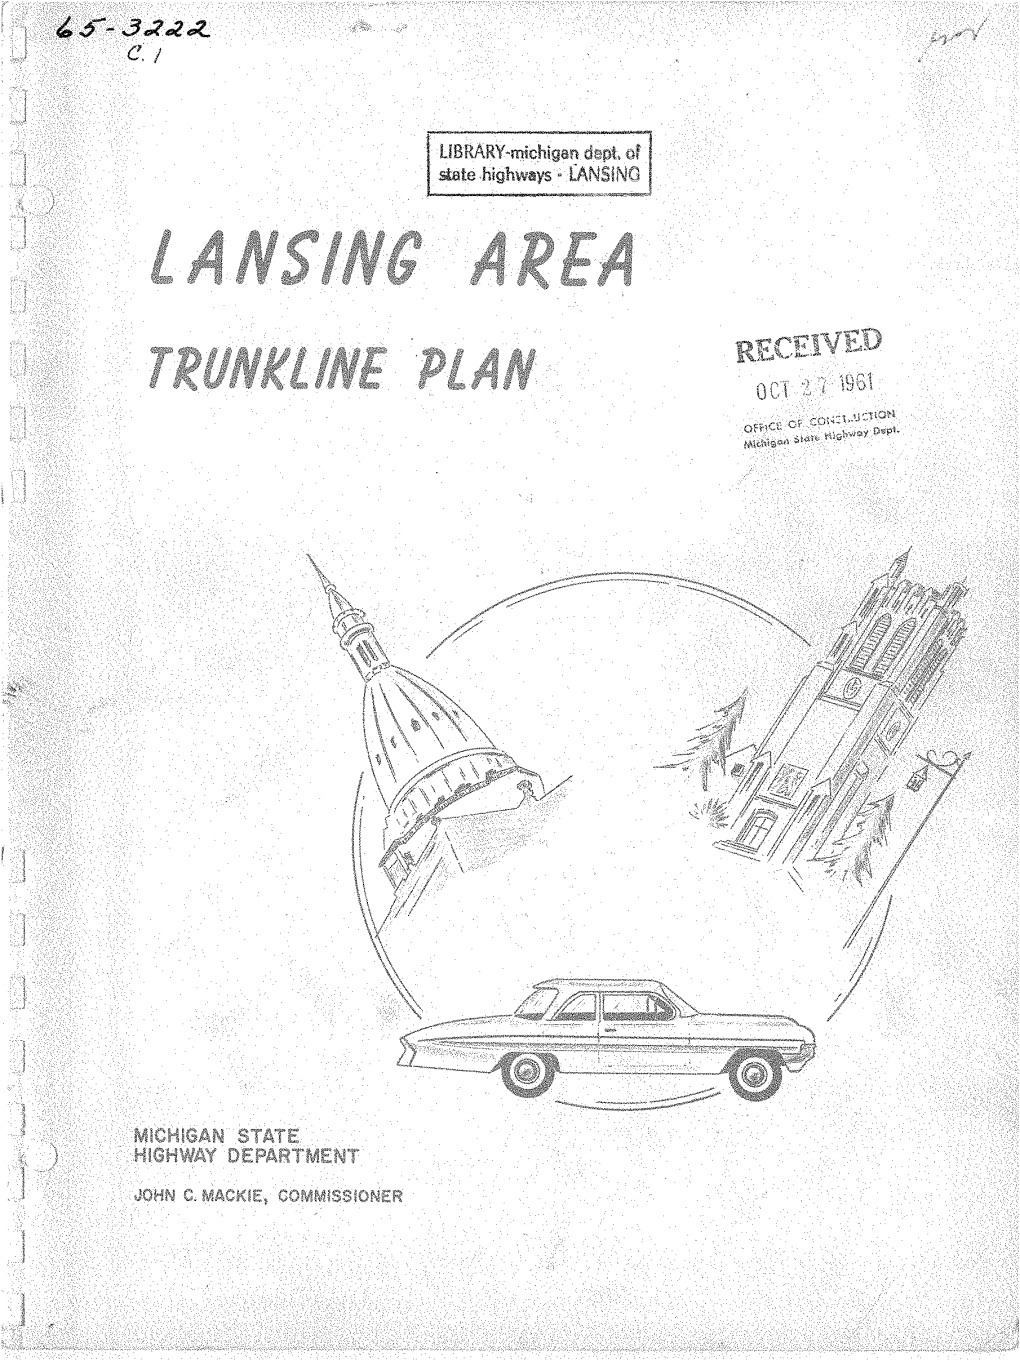 Lansing AREA Trunkline Plan